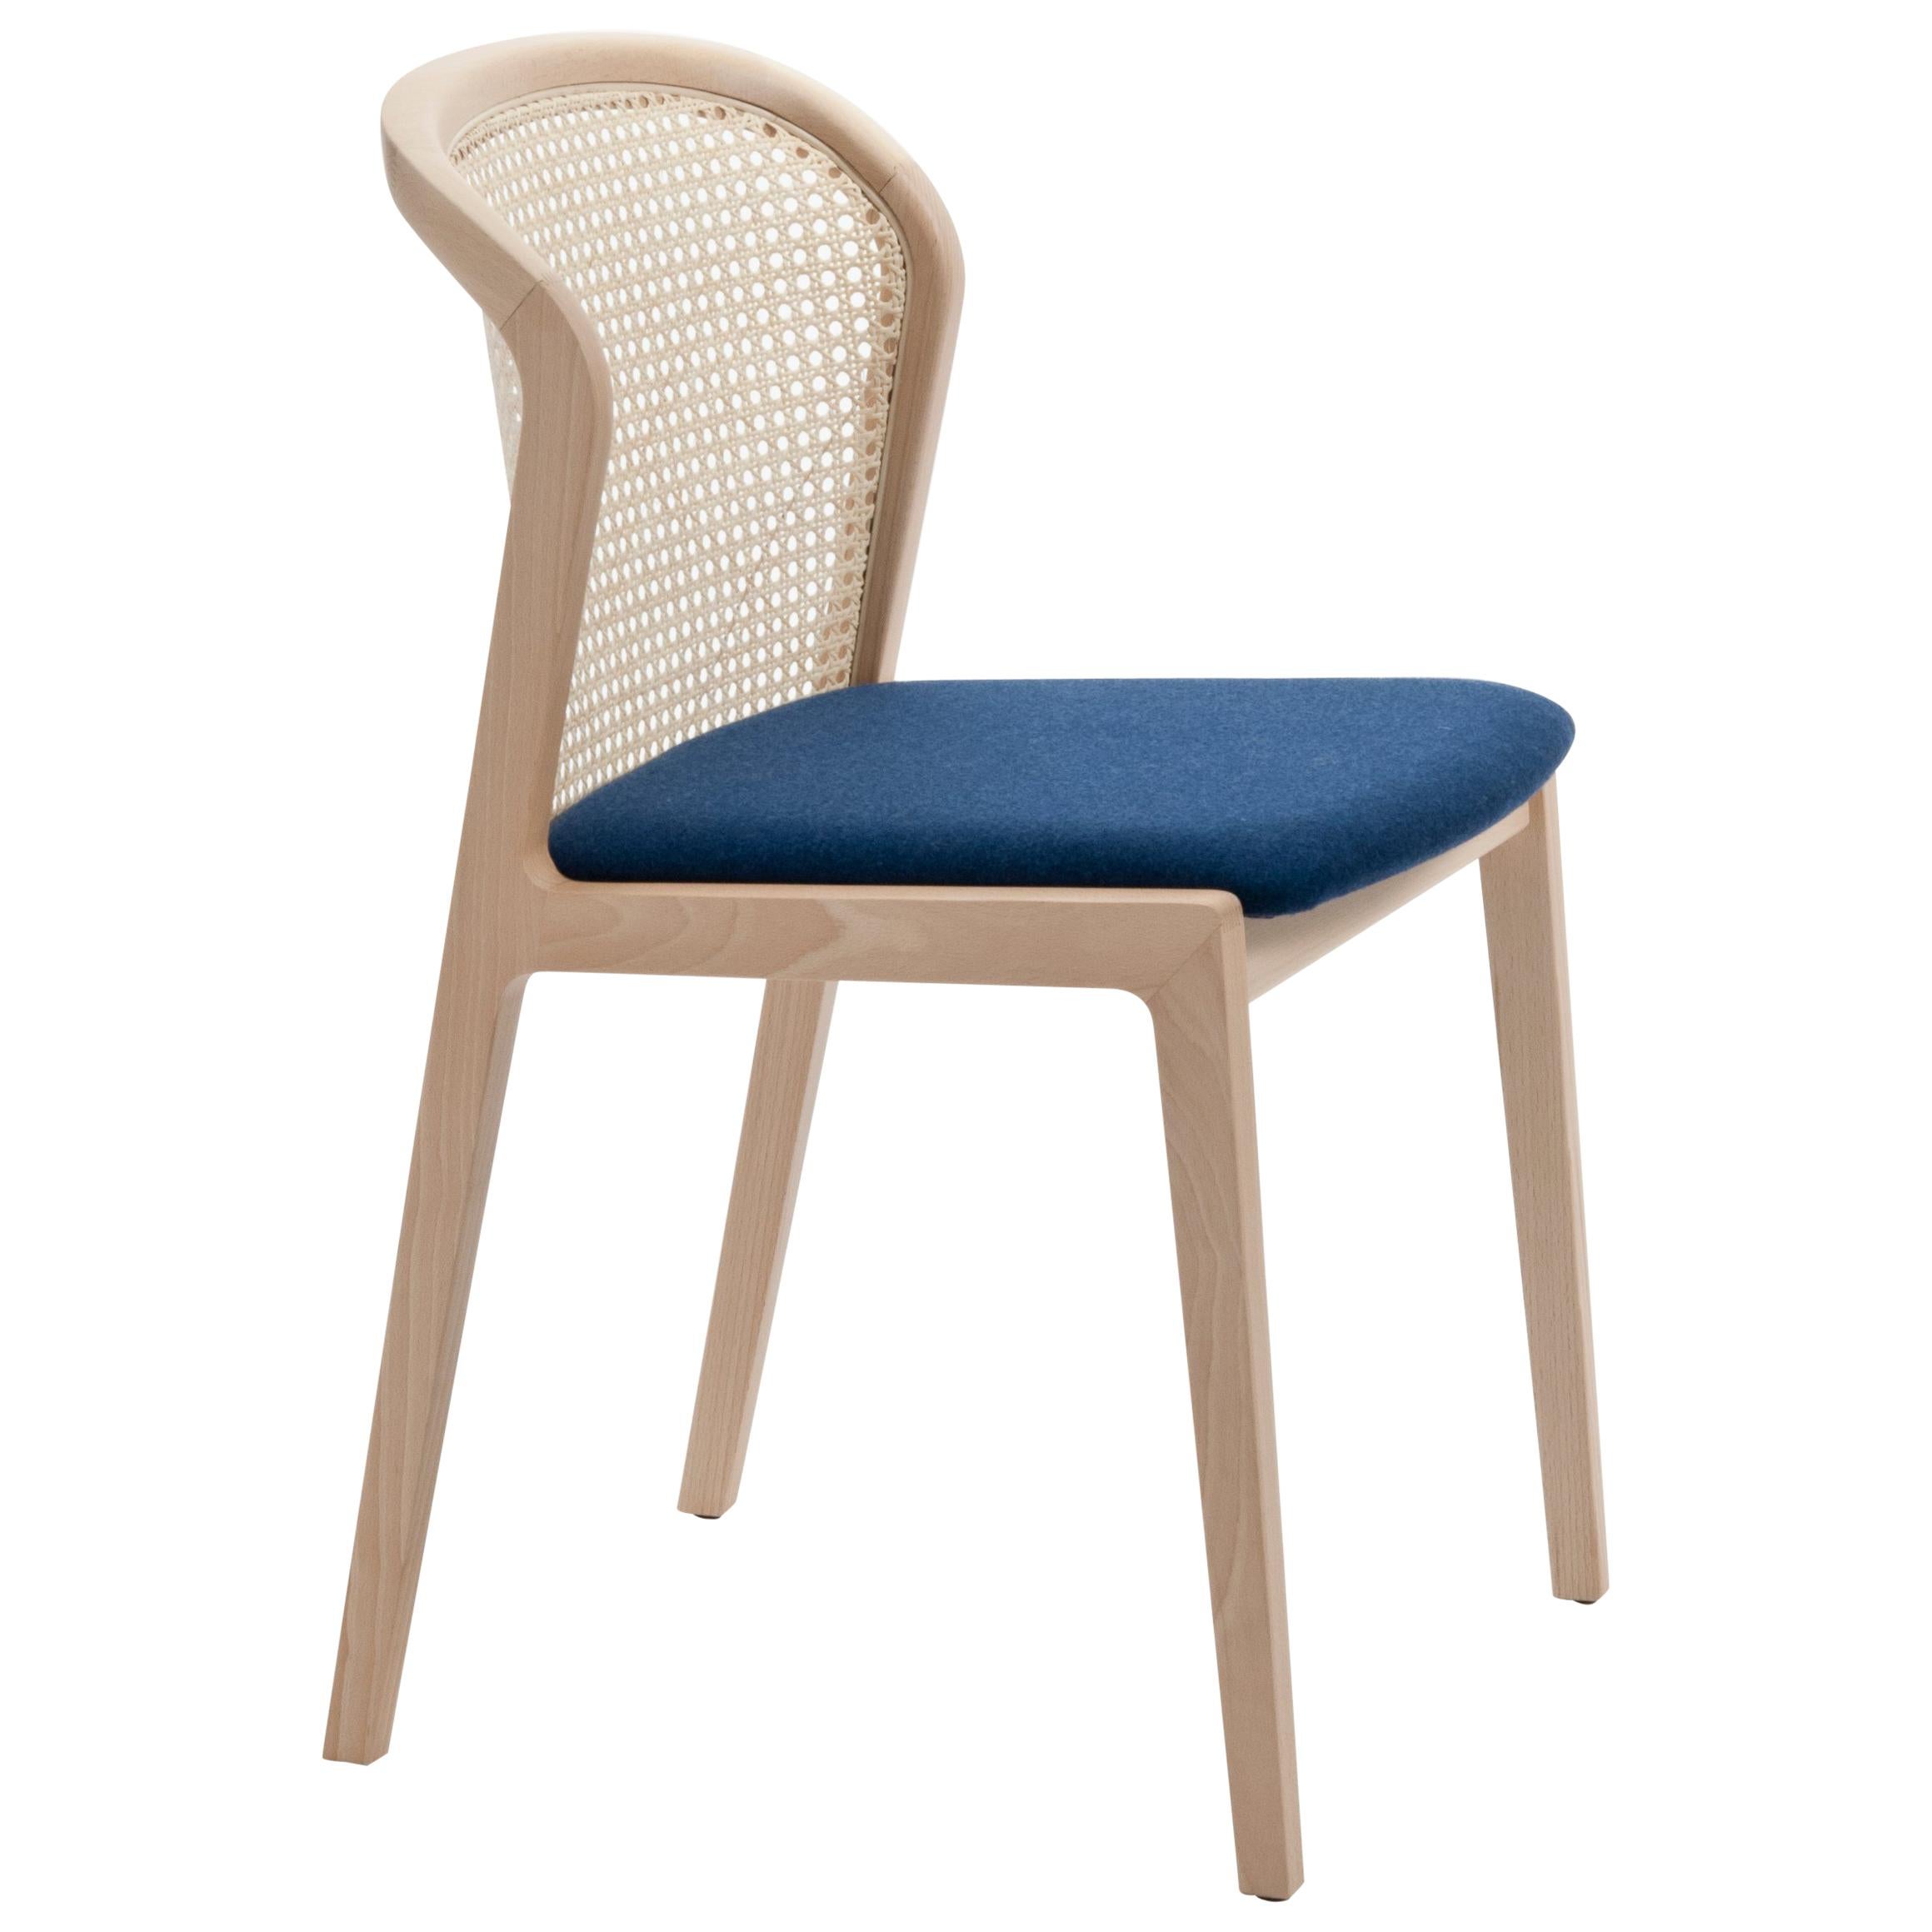 Wiener Stuhl Vienna von Col, Modernes Design aus Holz und Stroh, blauer gepolsterter Sitz